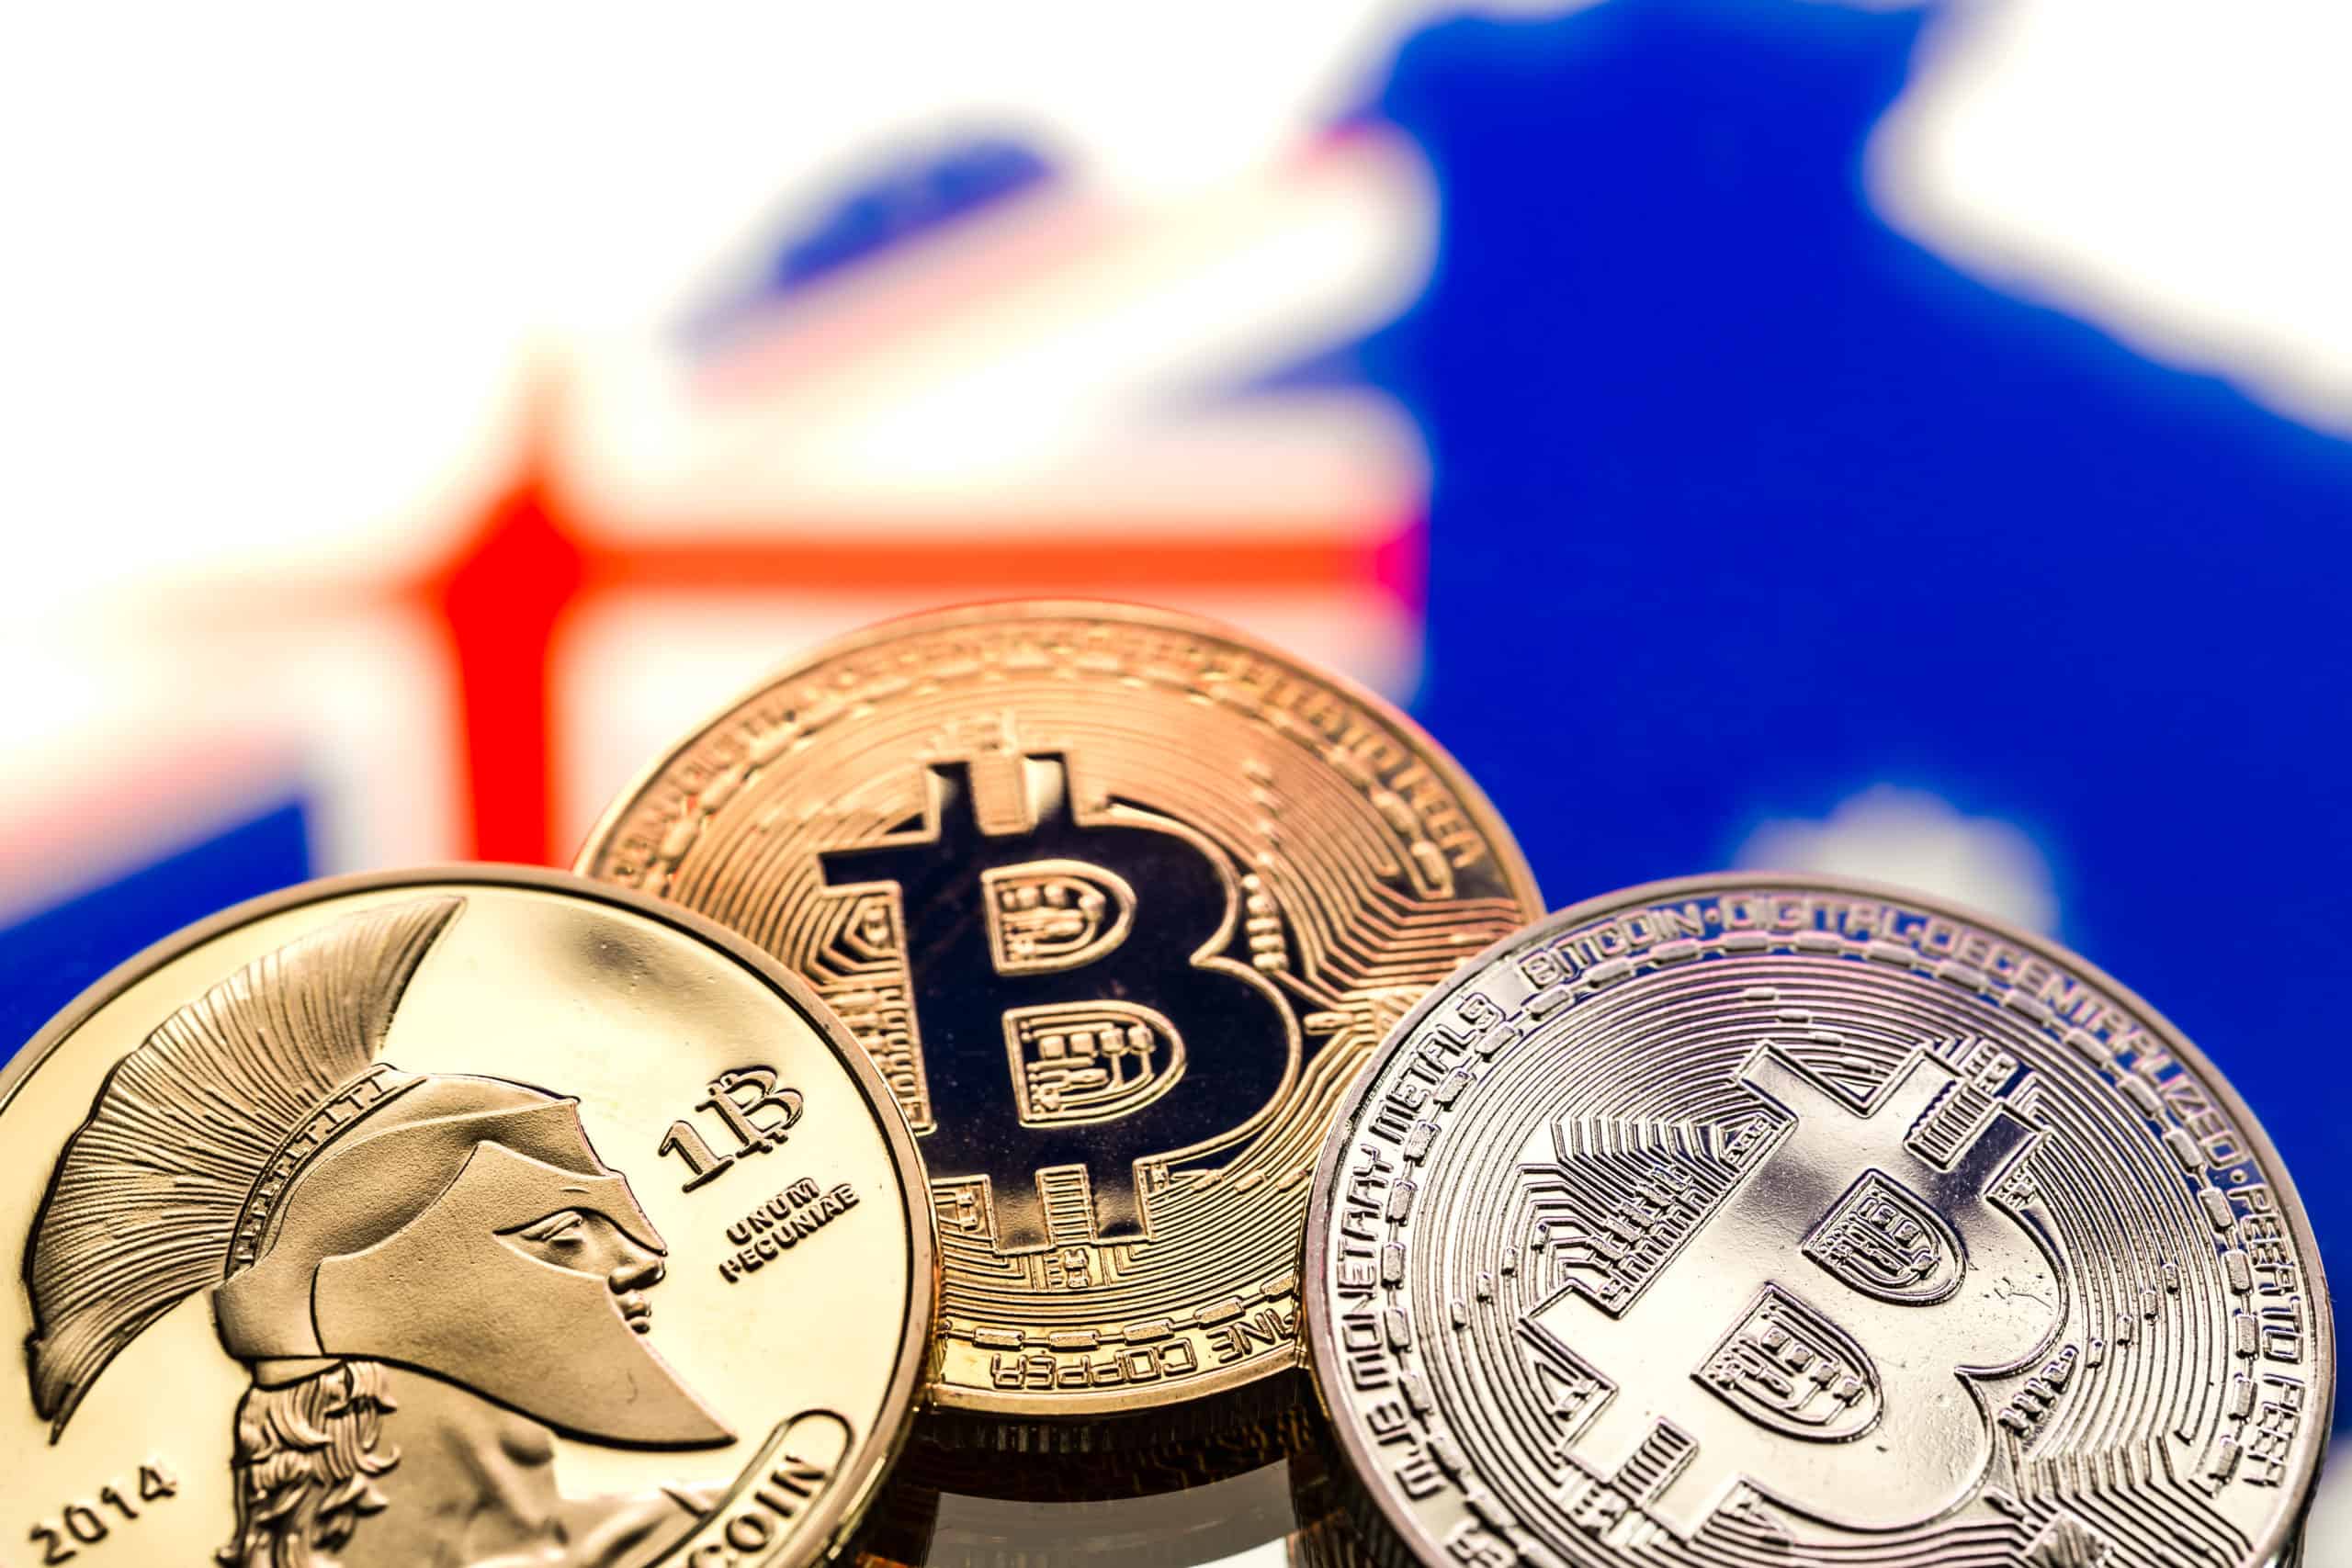 Australia seeks new submissions on crypto regulation